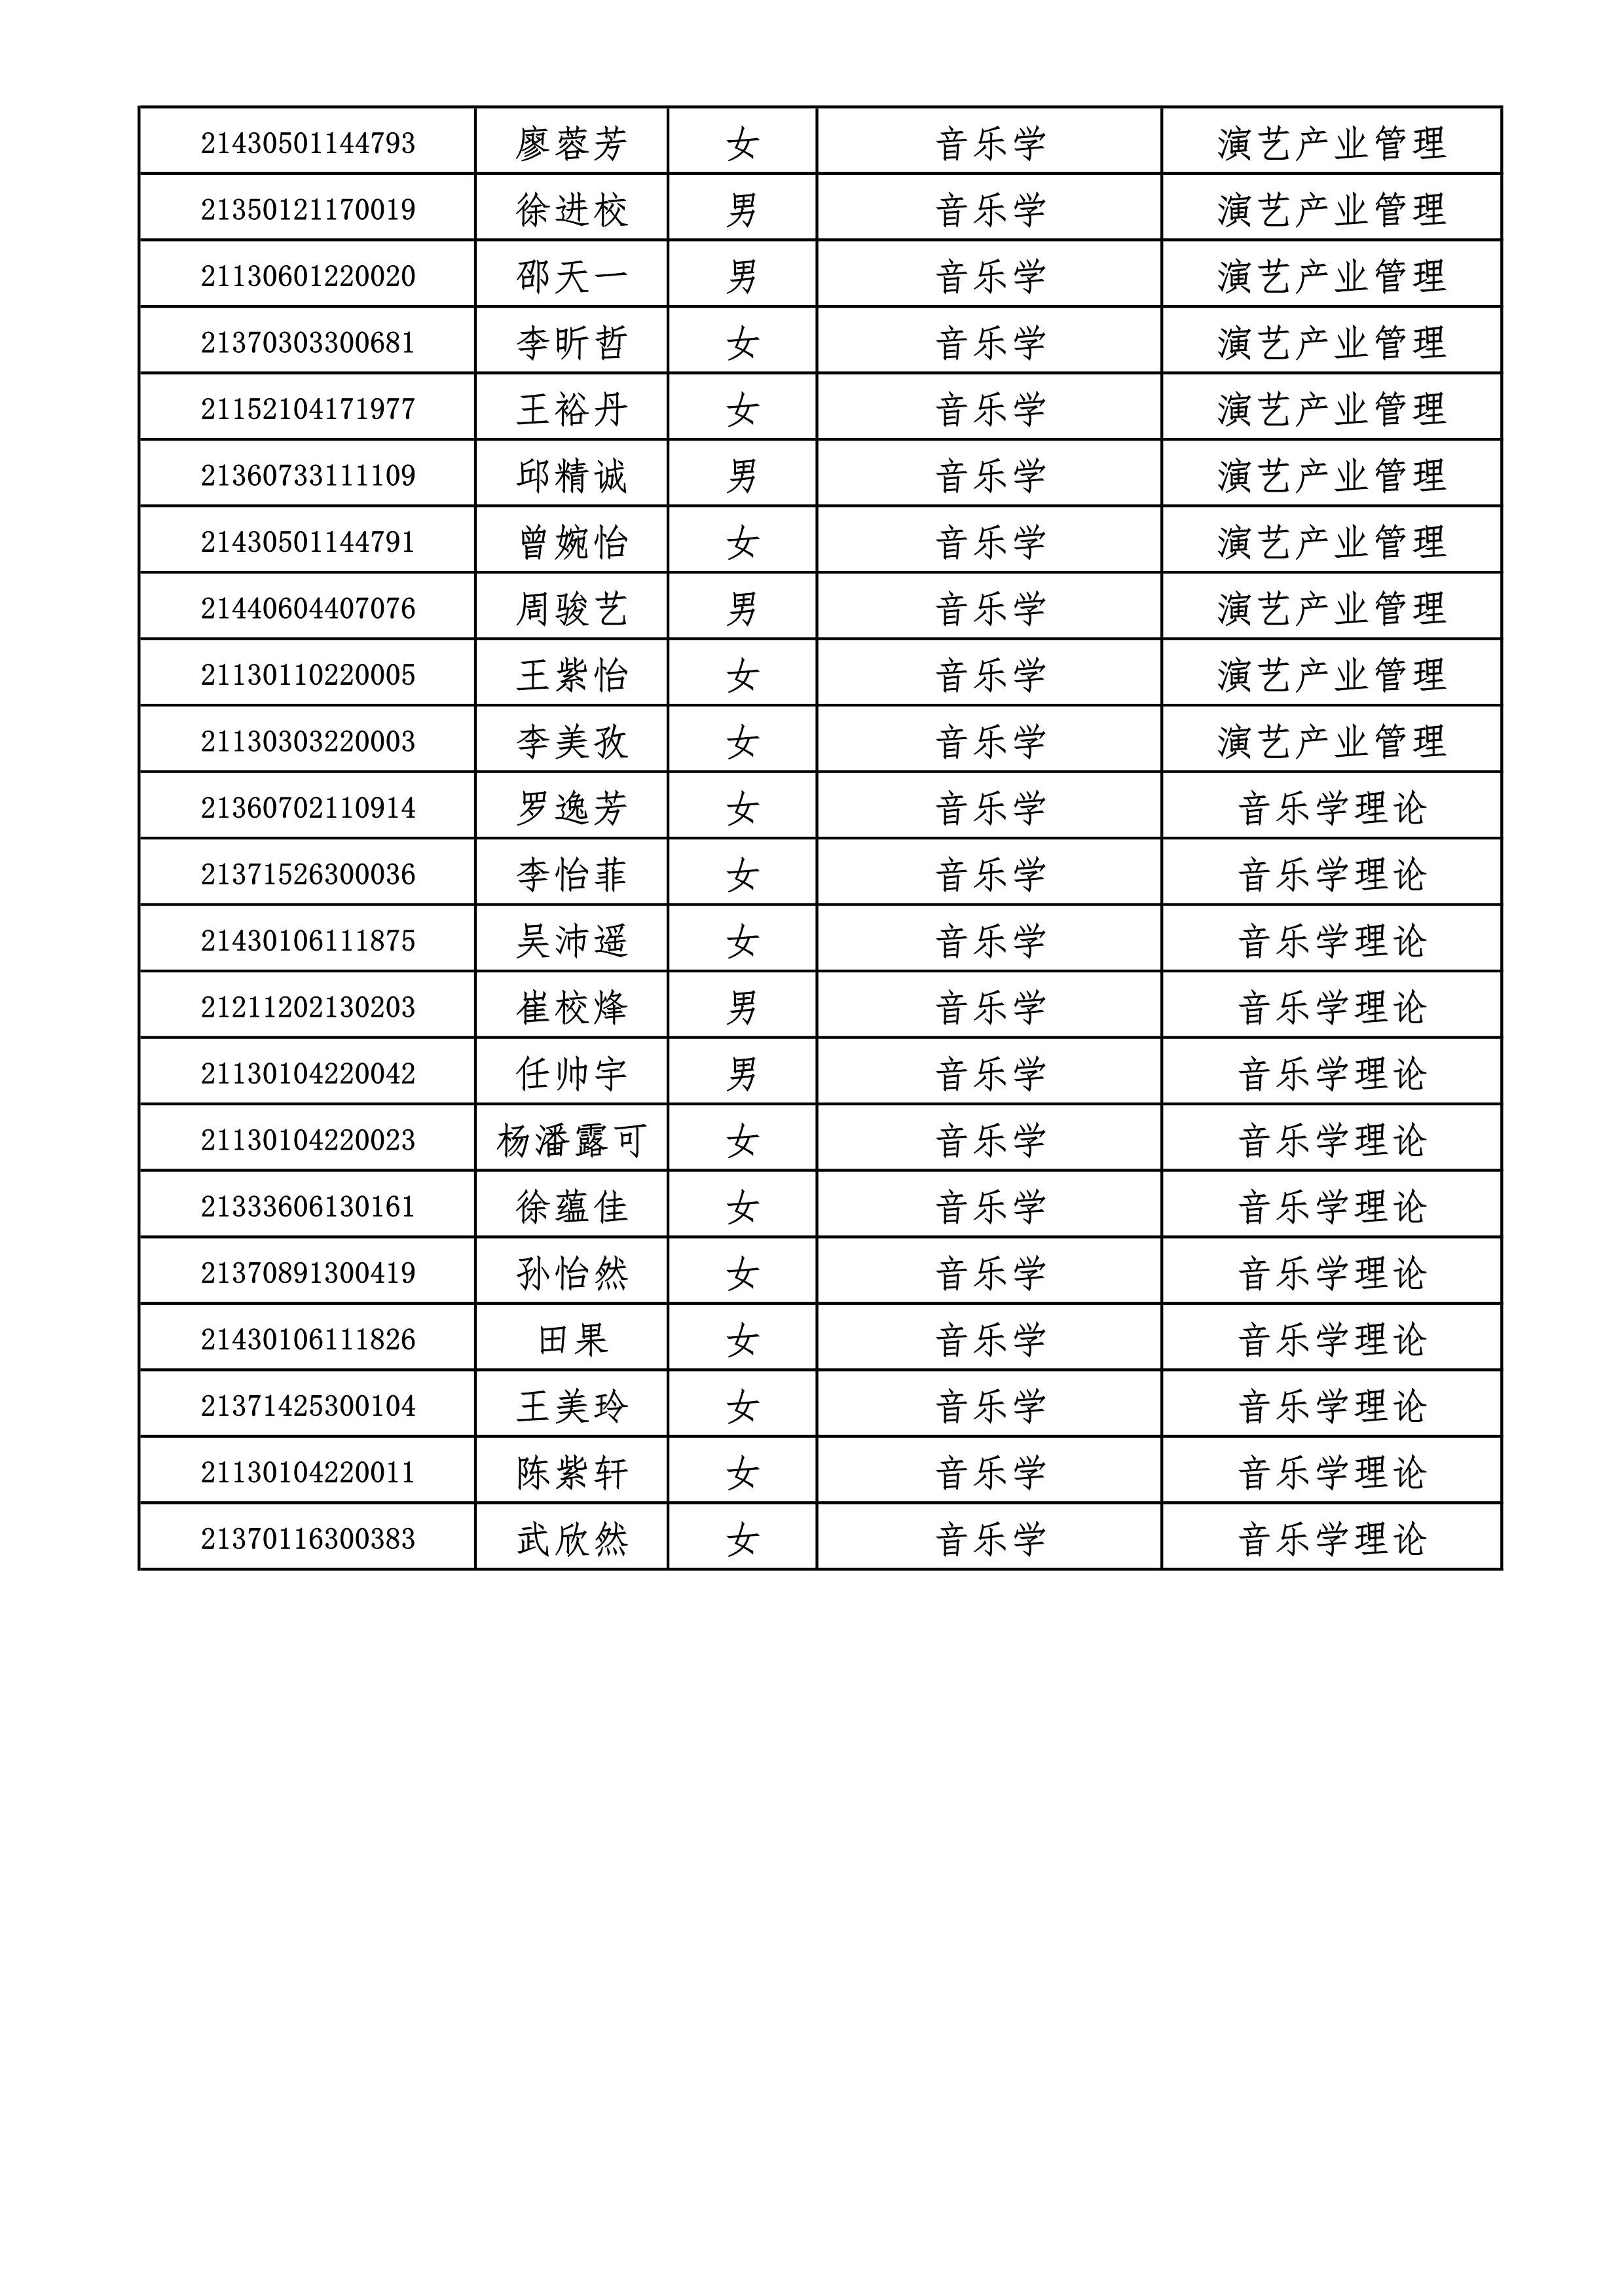 附件2+哈尔滨音乐学院2021年本科招生拟录取名单_6.jpg